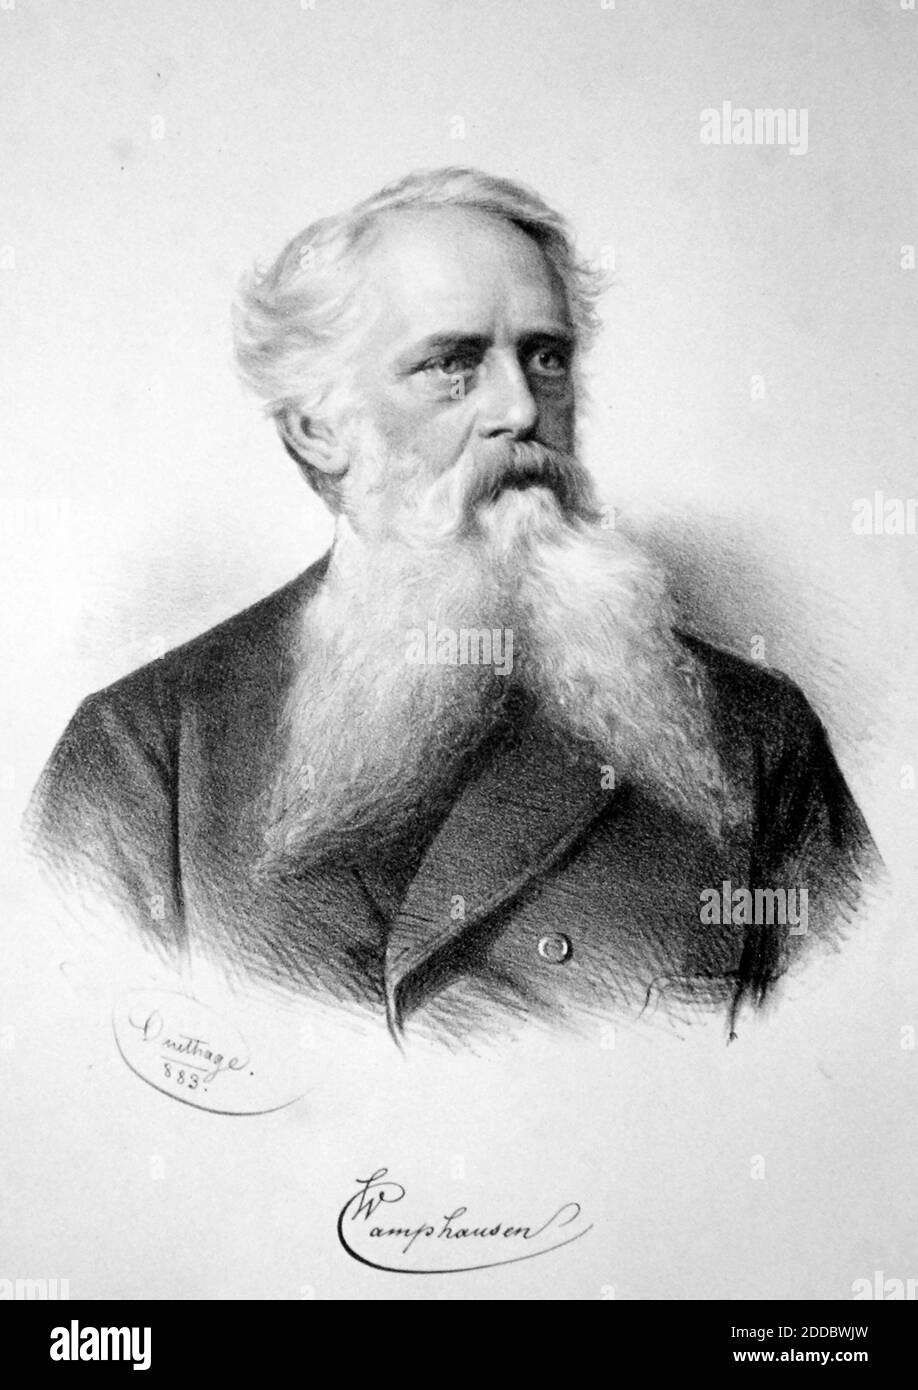 WILHELM CAMPHAUSEN (1818-1885) German painter in 1880. Stock Photo